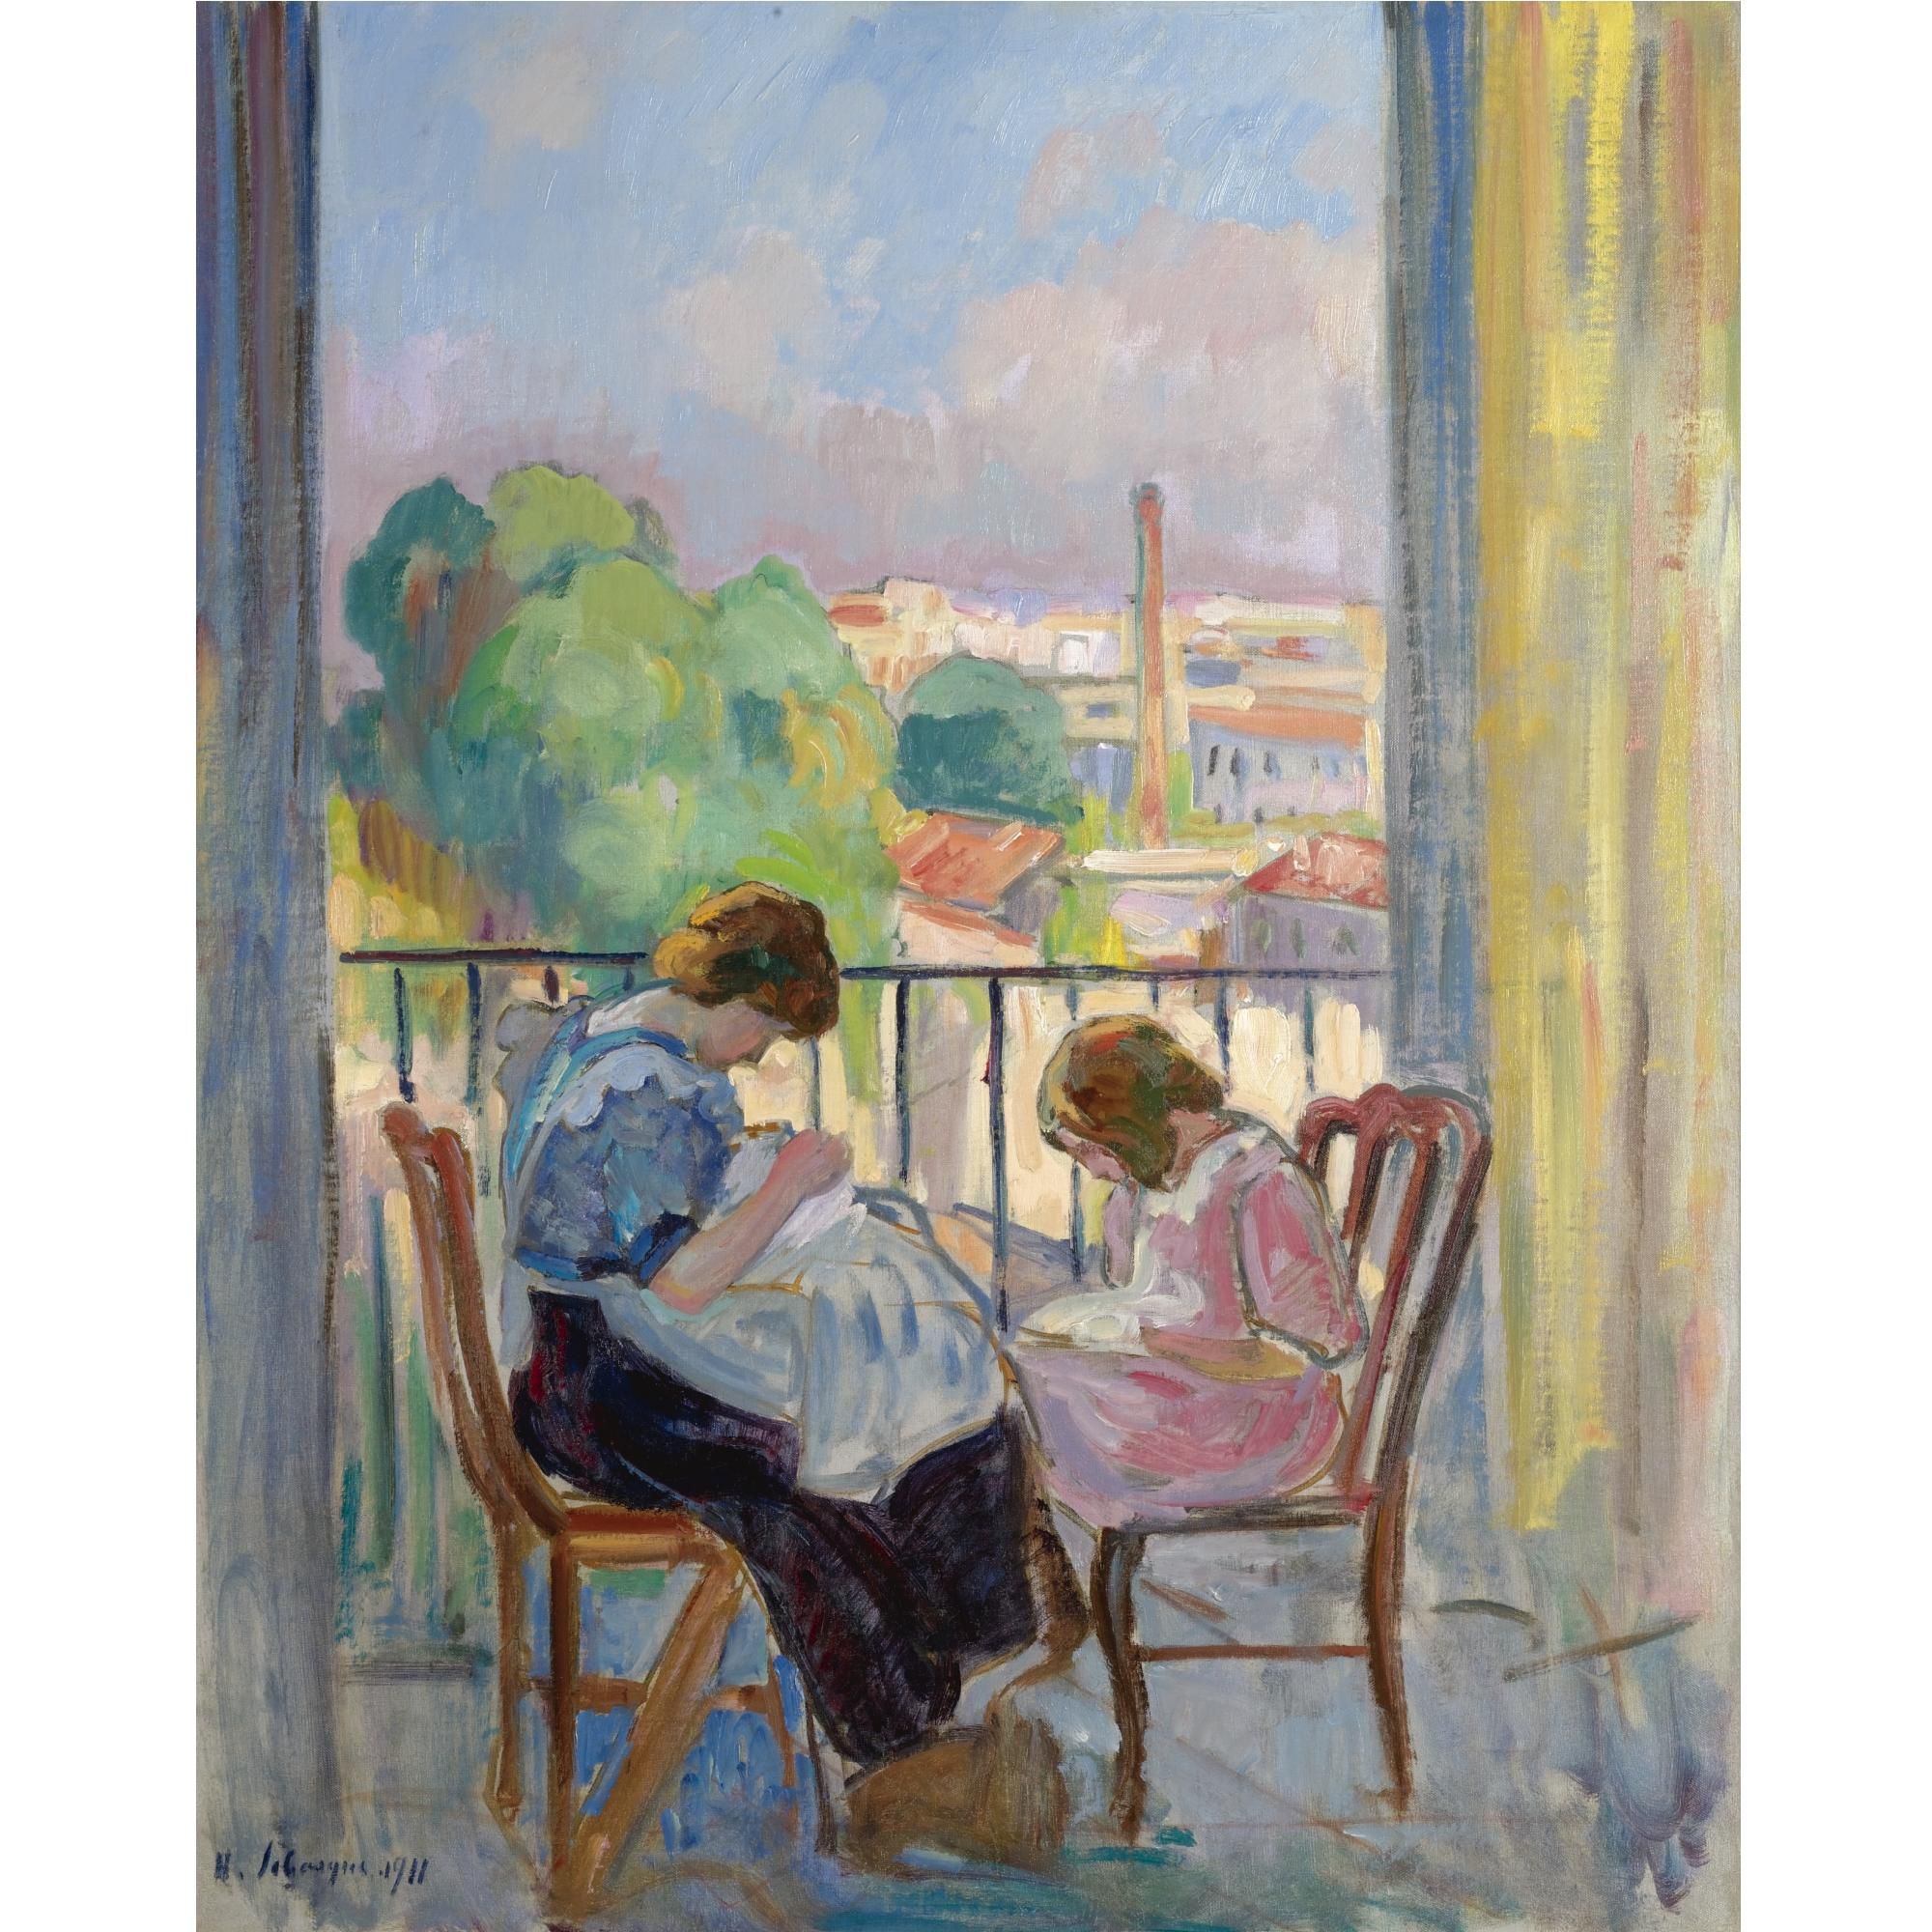 Сюжет бытового жанра. Анри Лебаск (1865 - 1937). Анри Лебаск у окна картина. Анри Лебаск Henri Lebasque. Анри Лебаск девушка шьющая у окна.